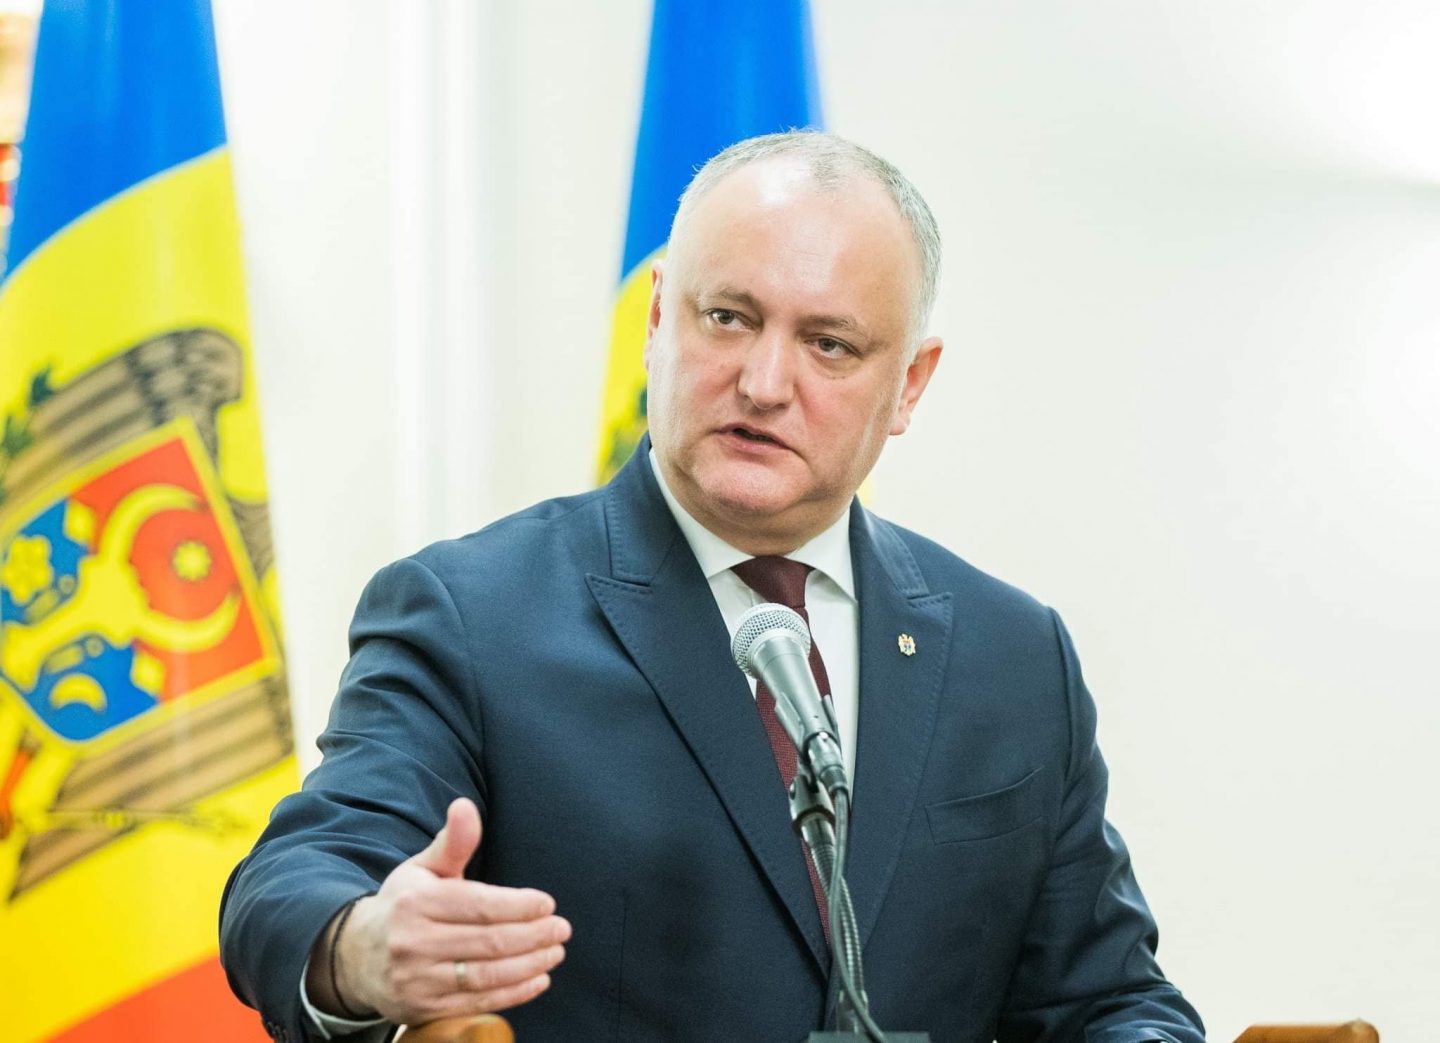 Șeful statului: Moldovenilor le-a mers că în situația de criză nu avem Guvernul “Harvard”